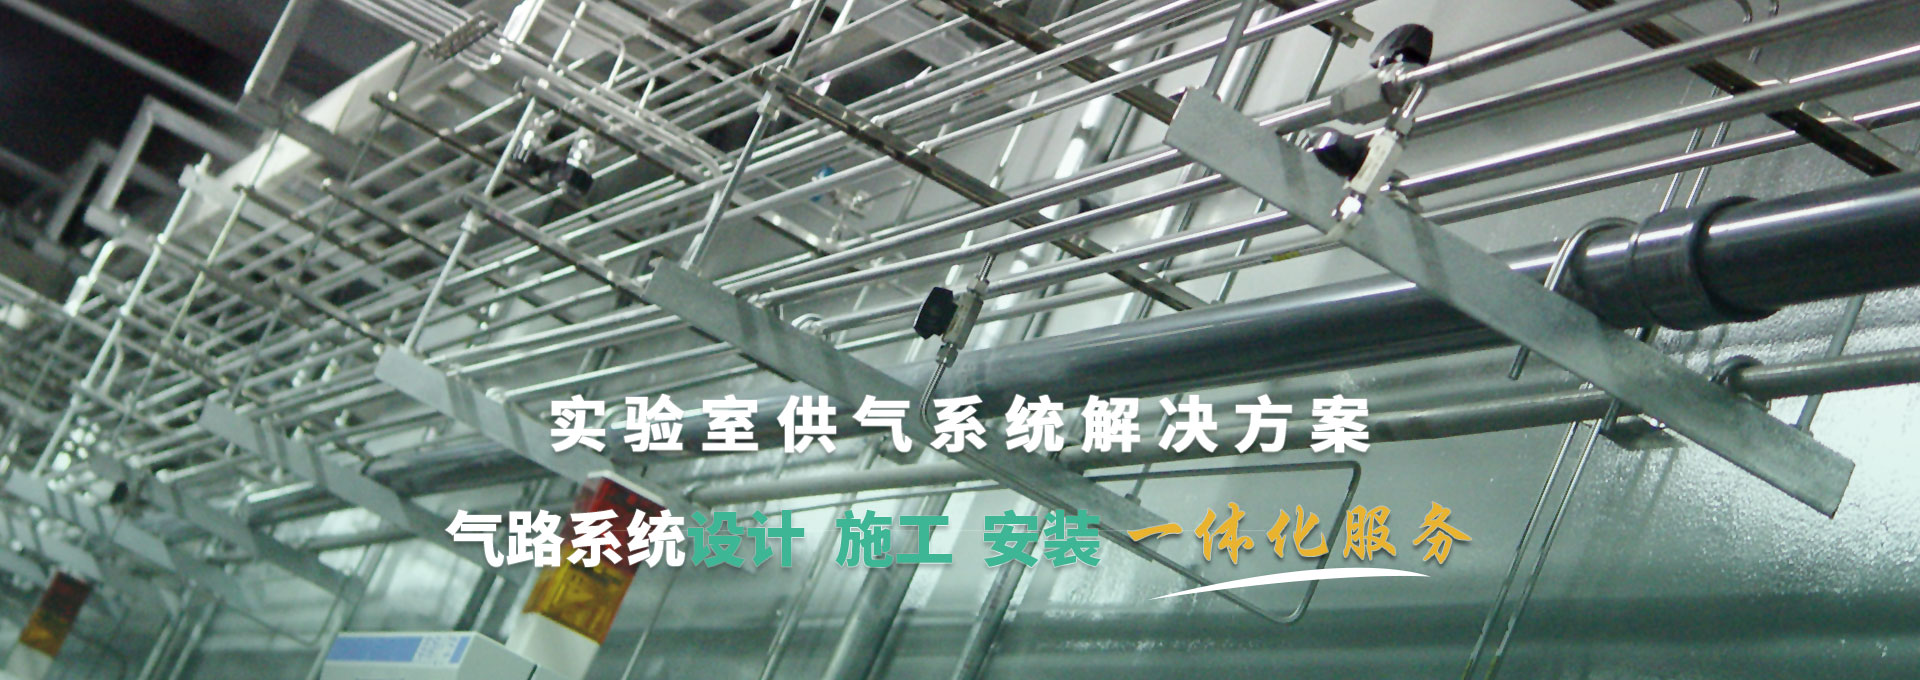 實(shí)驗室供氣系統解決方案 氣路系統設計、施工、安裝一體化服務(wù)